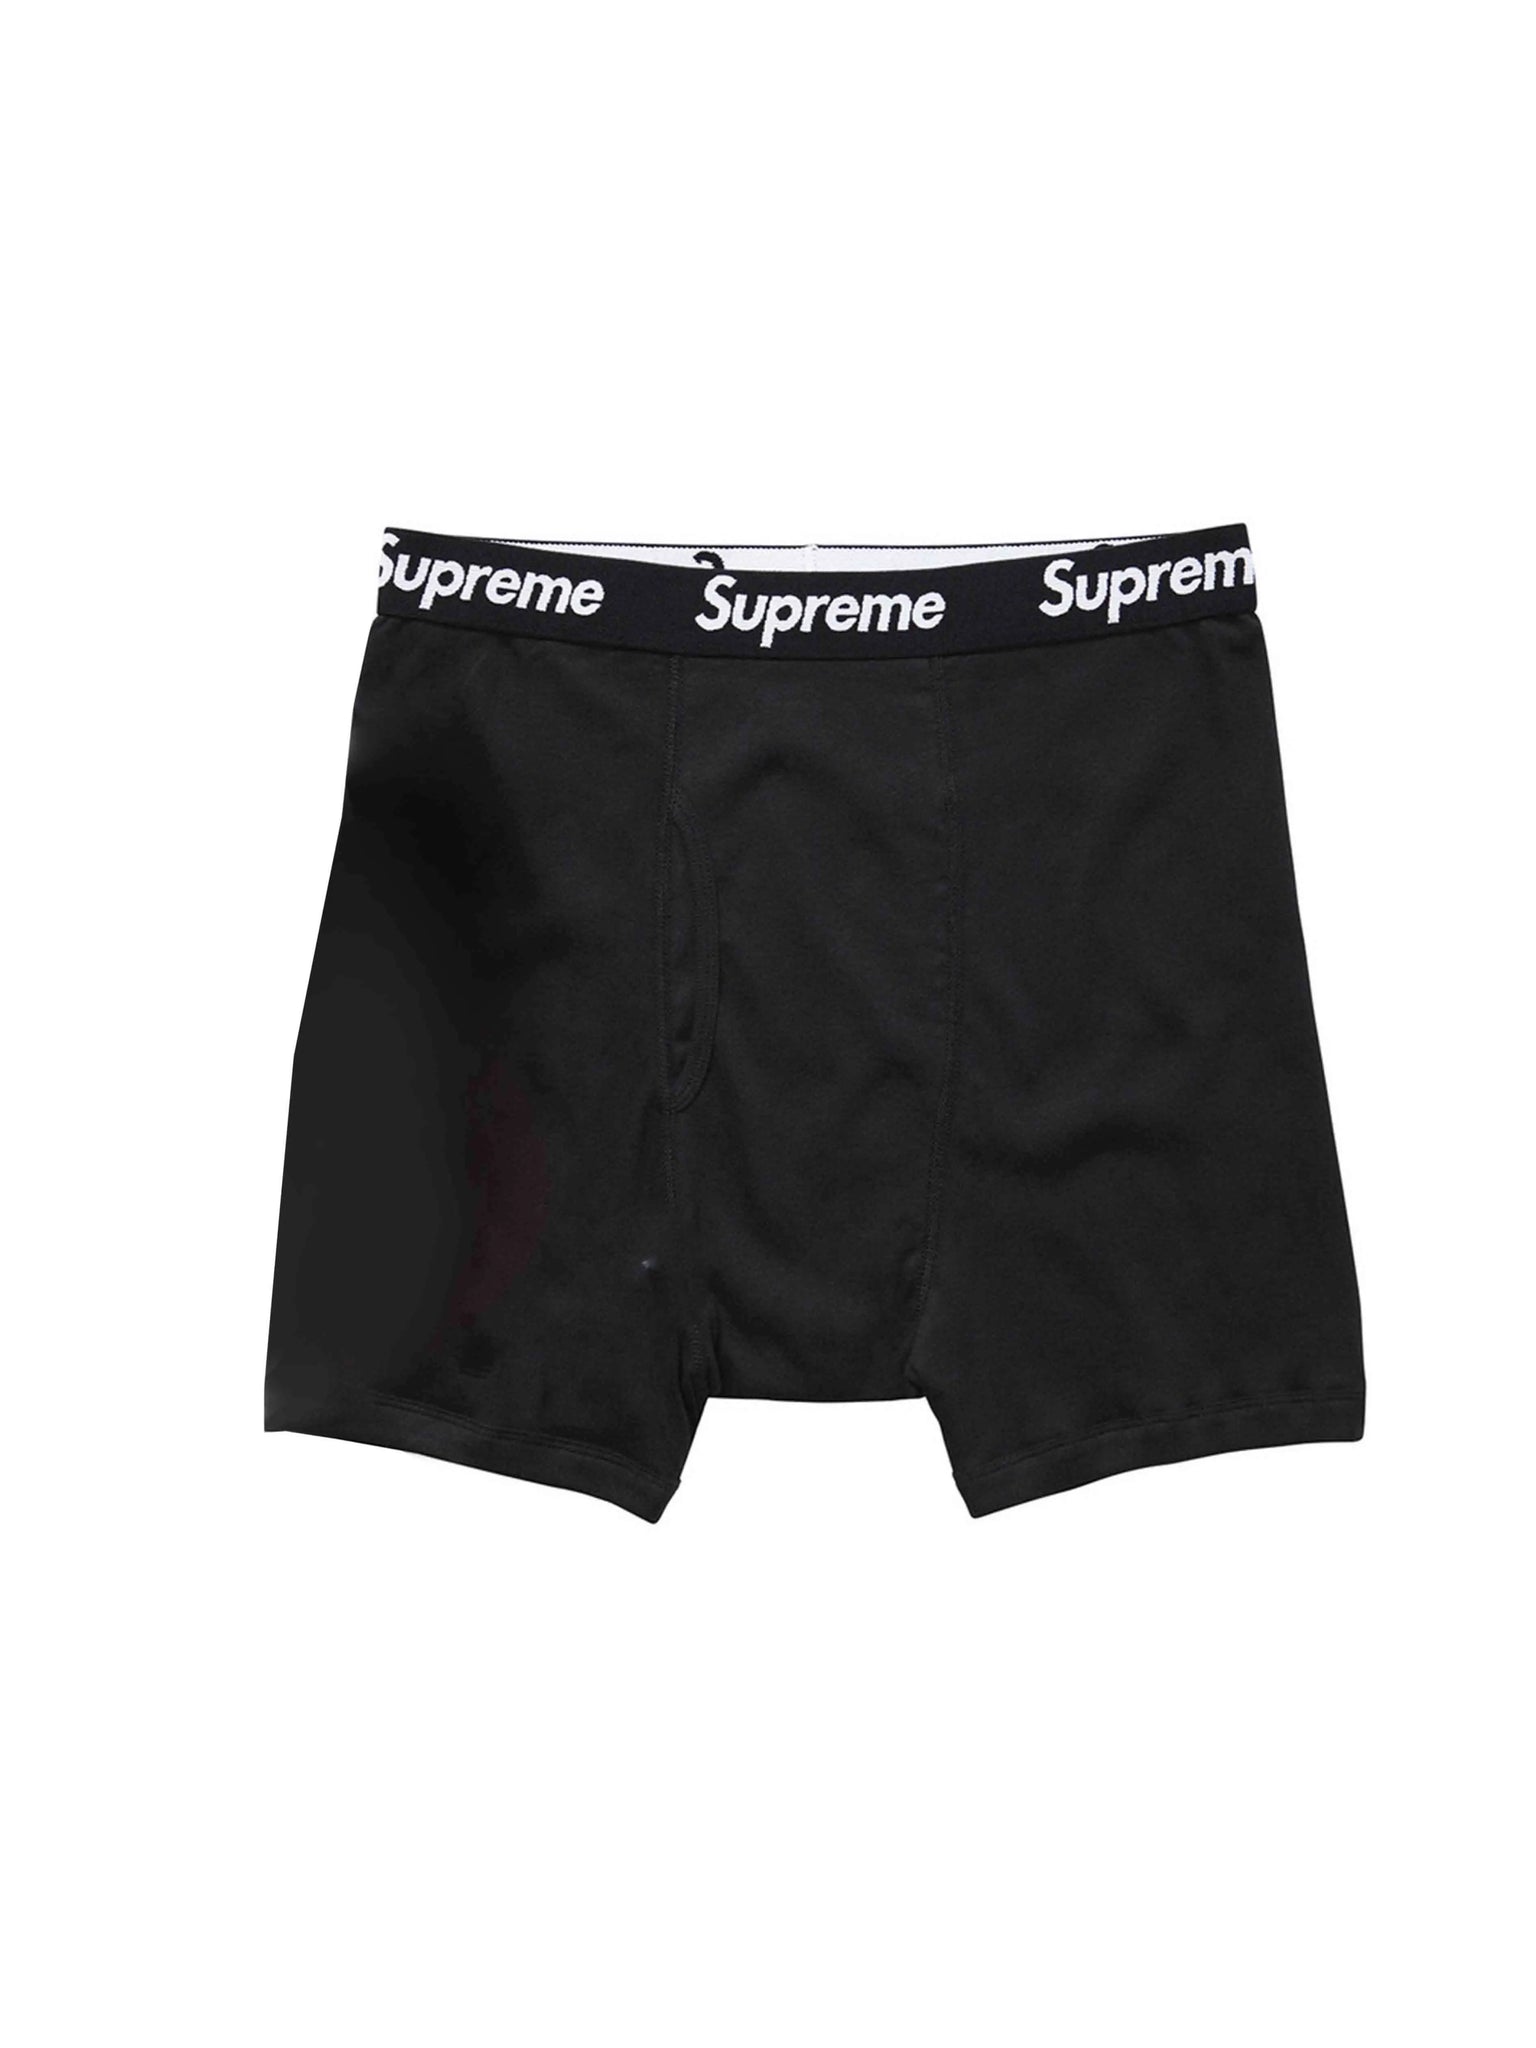 Supreme Hanes Boxer Briefs [Single] Supreme